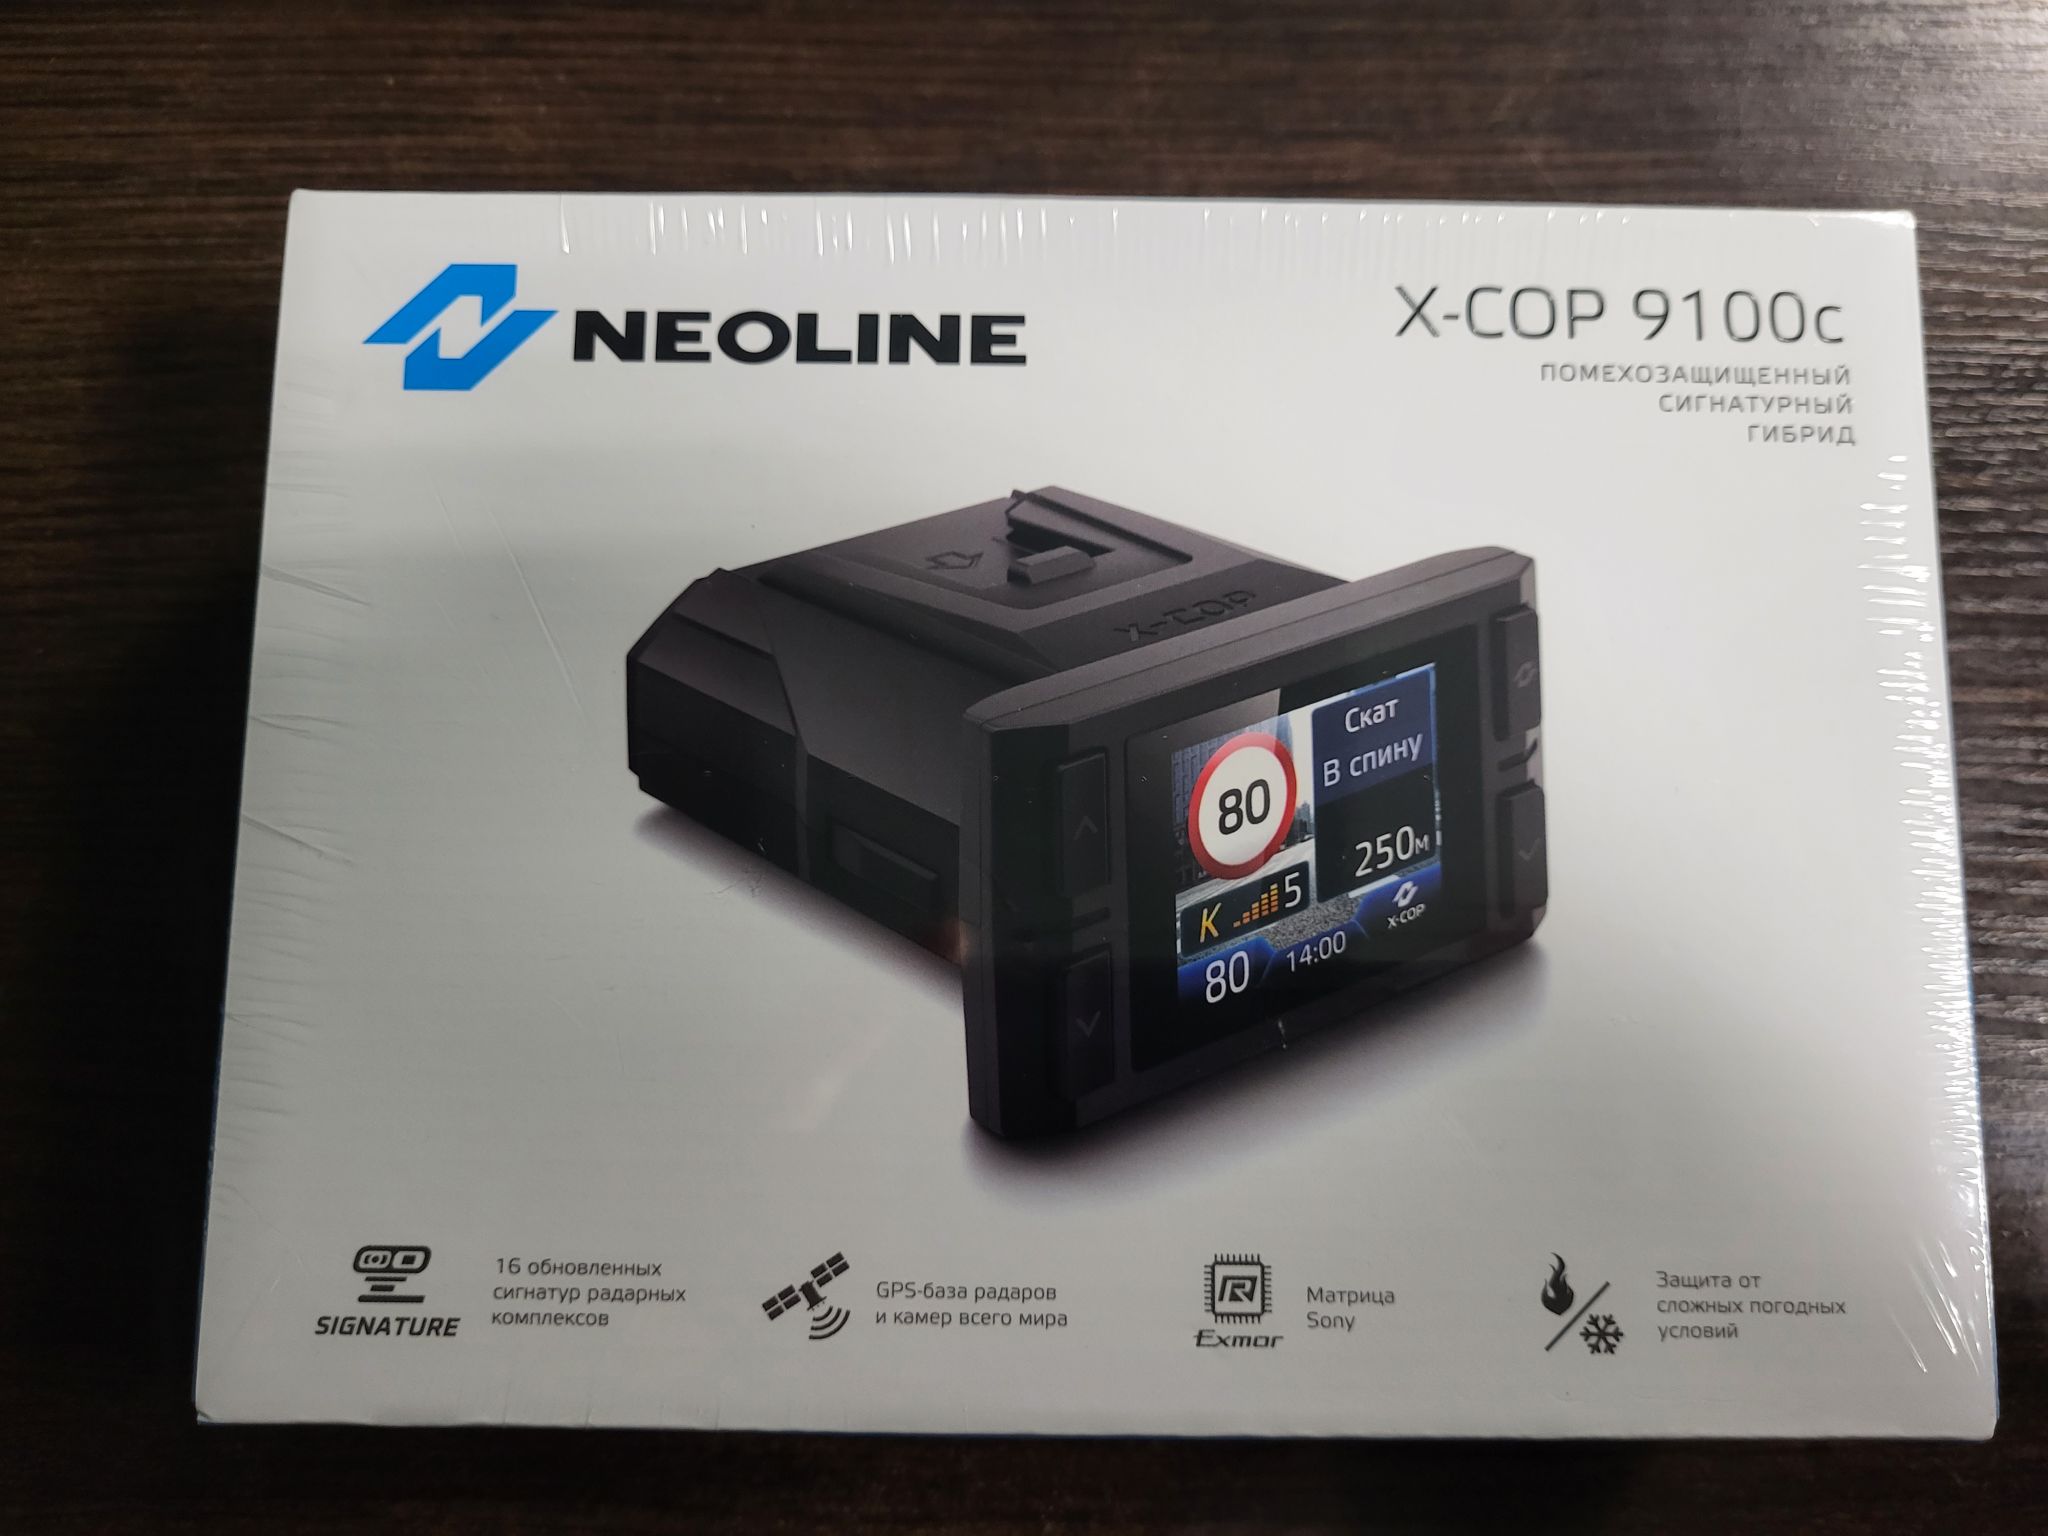 Neoline x cop 9100z. Neoline x-cop 9100x. Neoline x-cop 9100s обновление базы радаров.